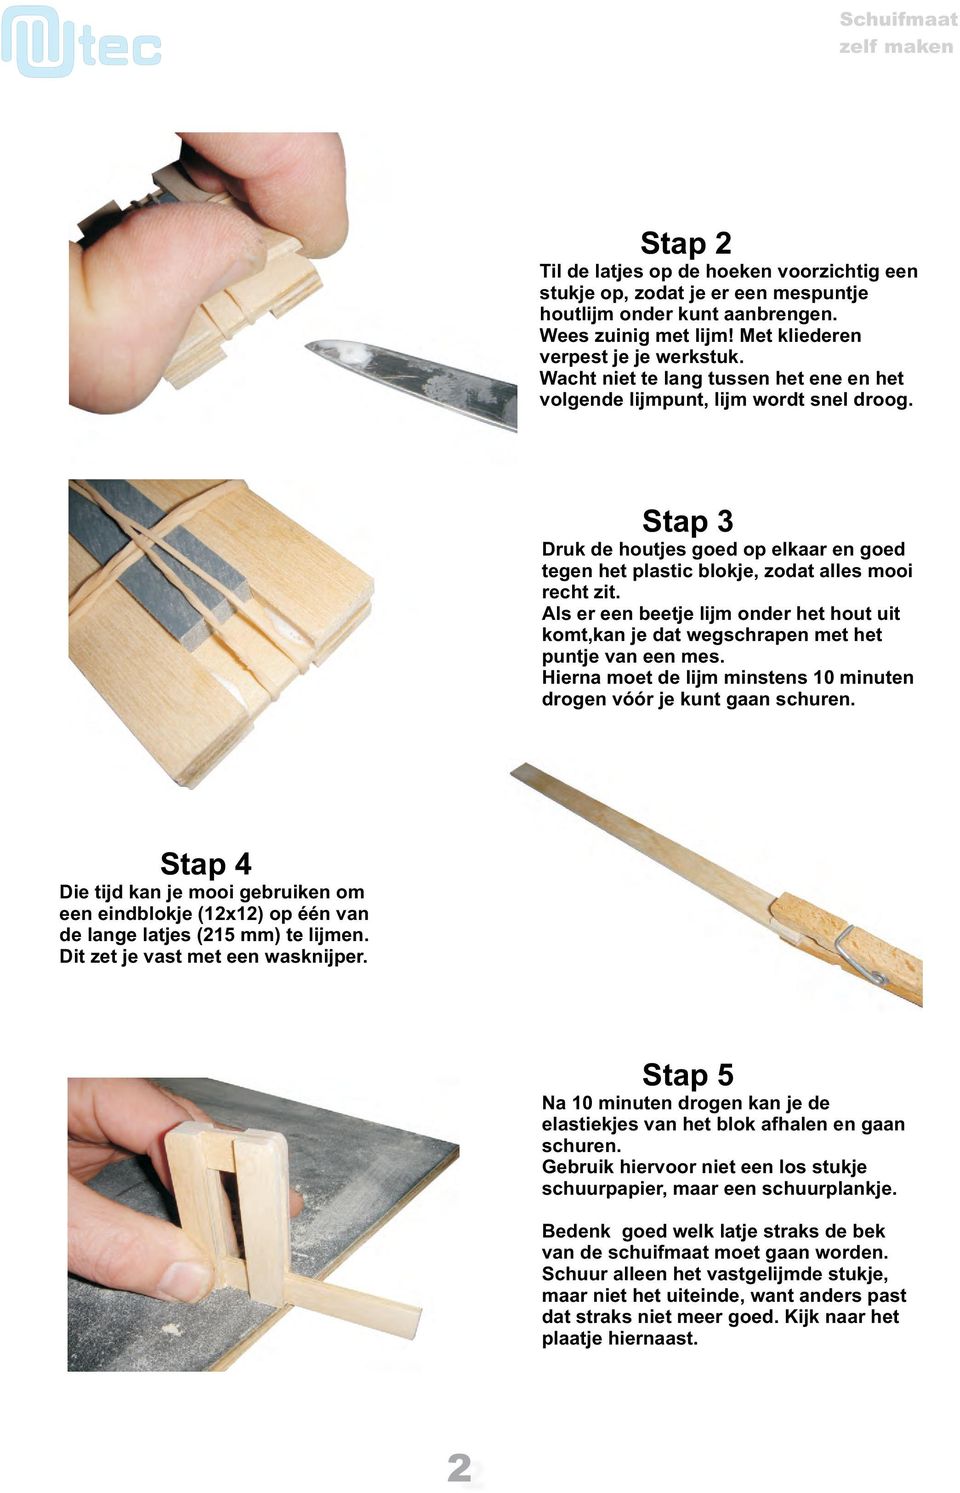 Als er een beetje lijm onder het hout uit komt,kan je dat wegschrapen met het puntje van een mes. Hierna moet de lijm minstens 10 minuten drogen vóór je kunt gaan schuren.